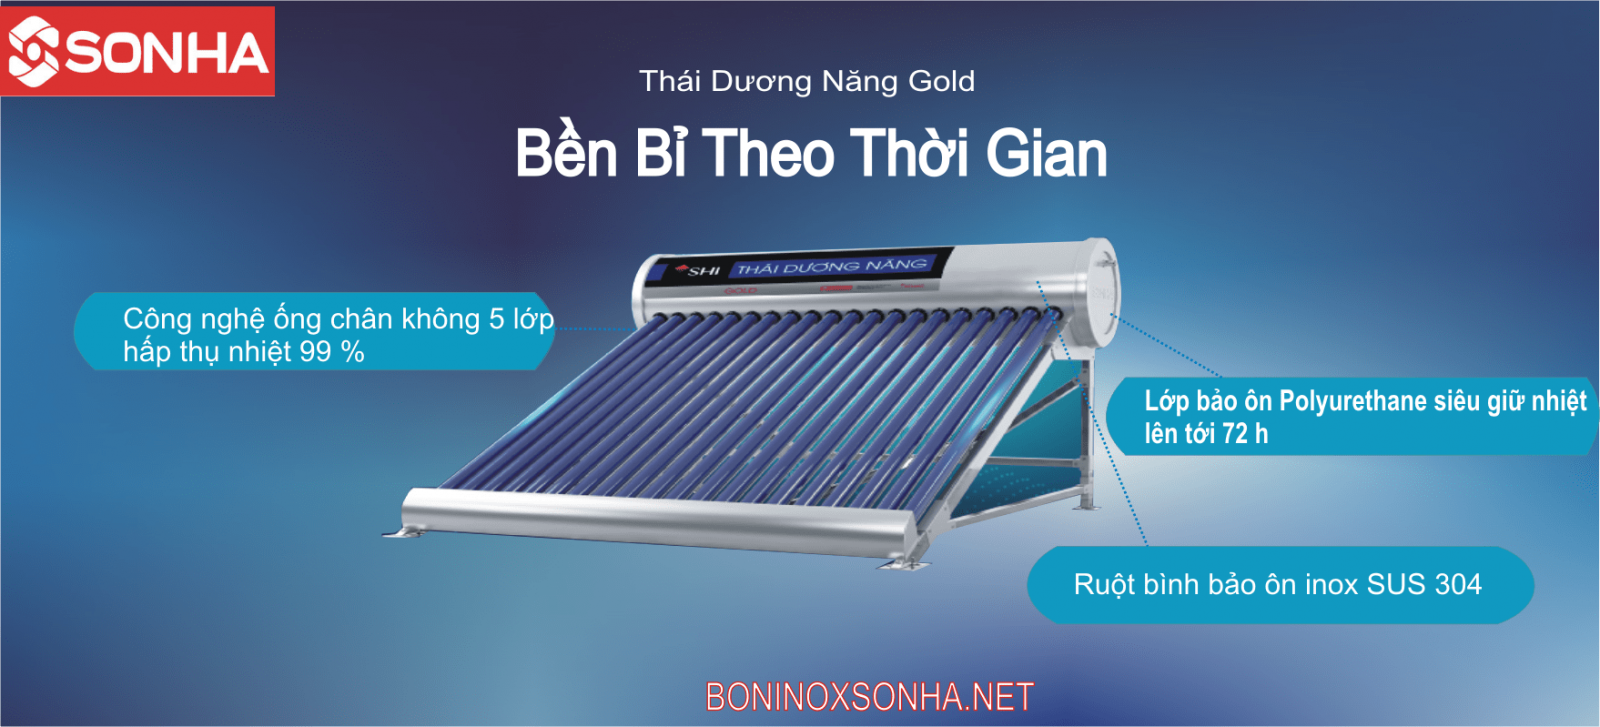 THÁI DƯƠNG NĂNG GOLD 58 - 160L Chân Không Sơn Hà